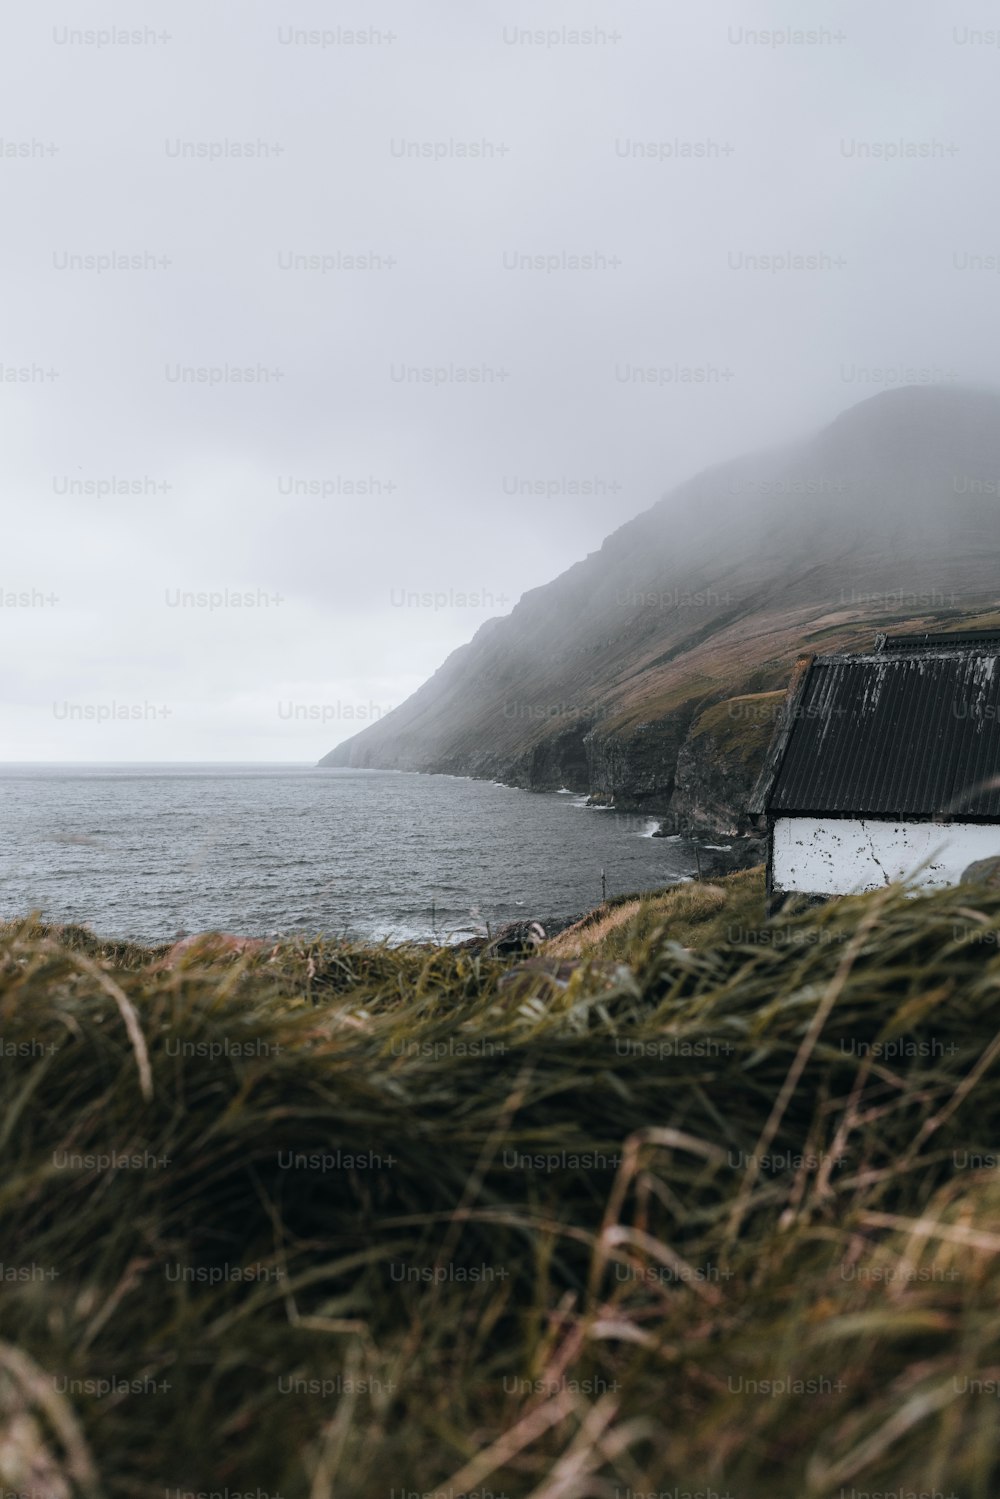 바다 옆 풀밭으로 덮인 언덕 위에 앉아 있는 집